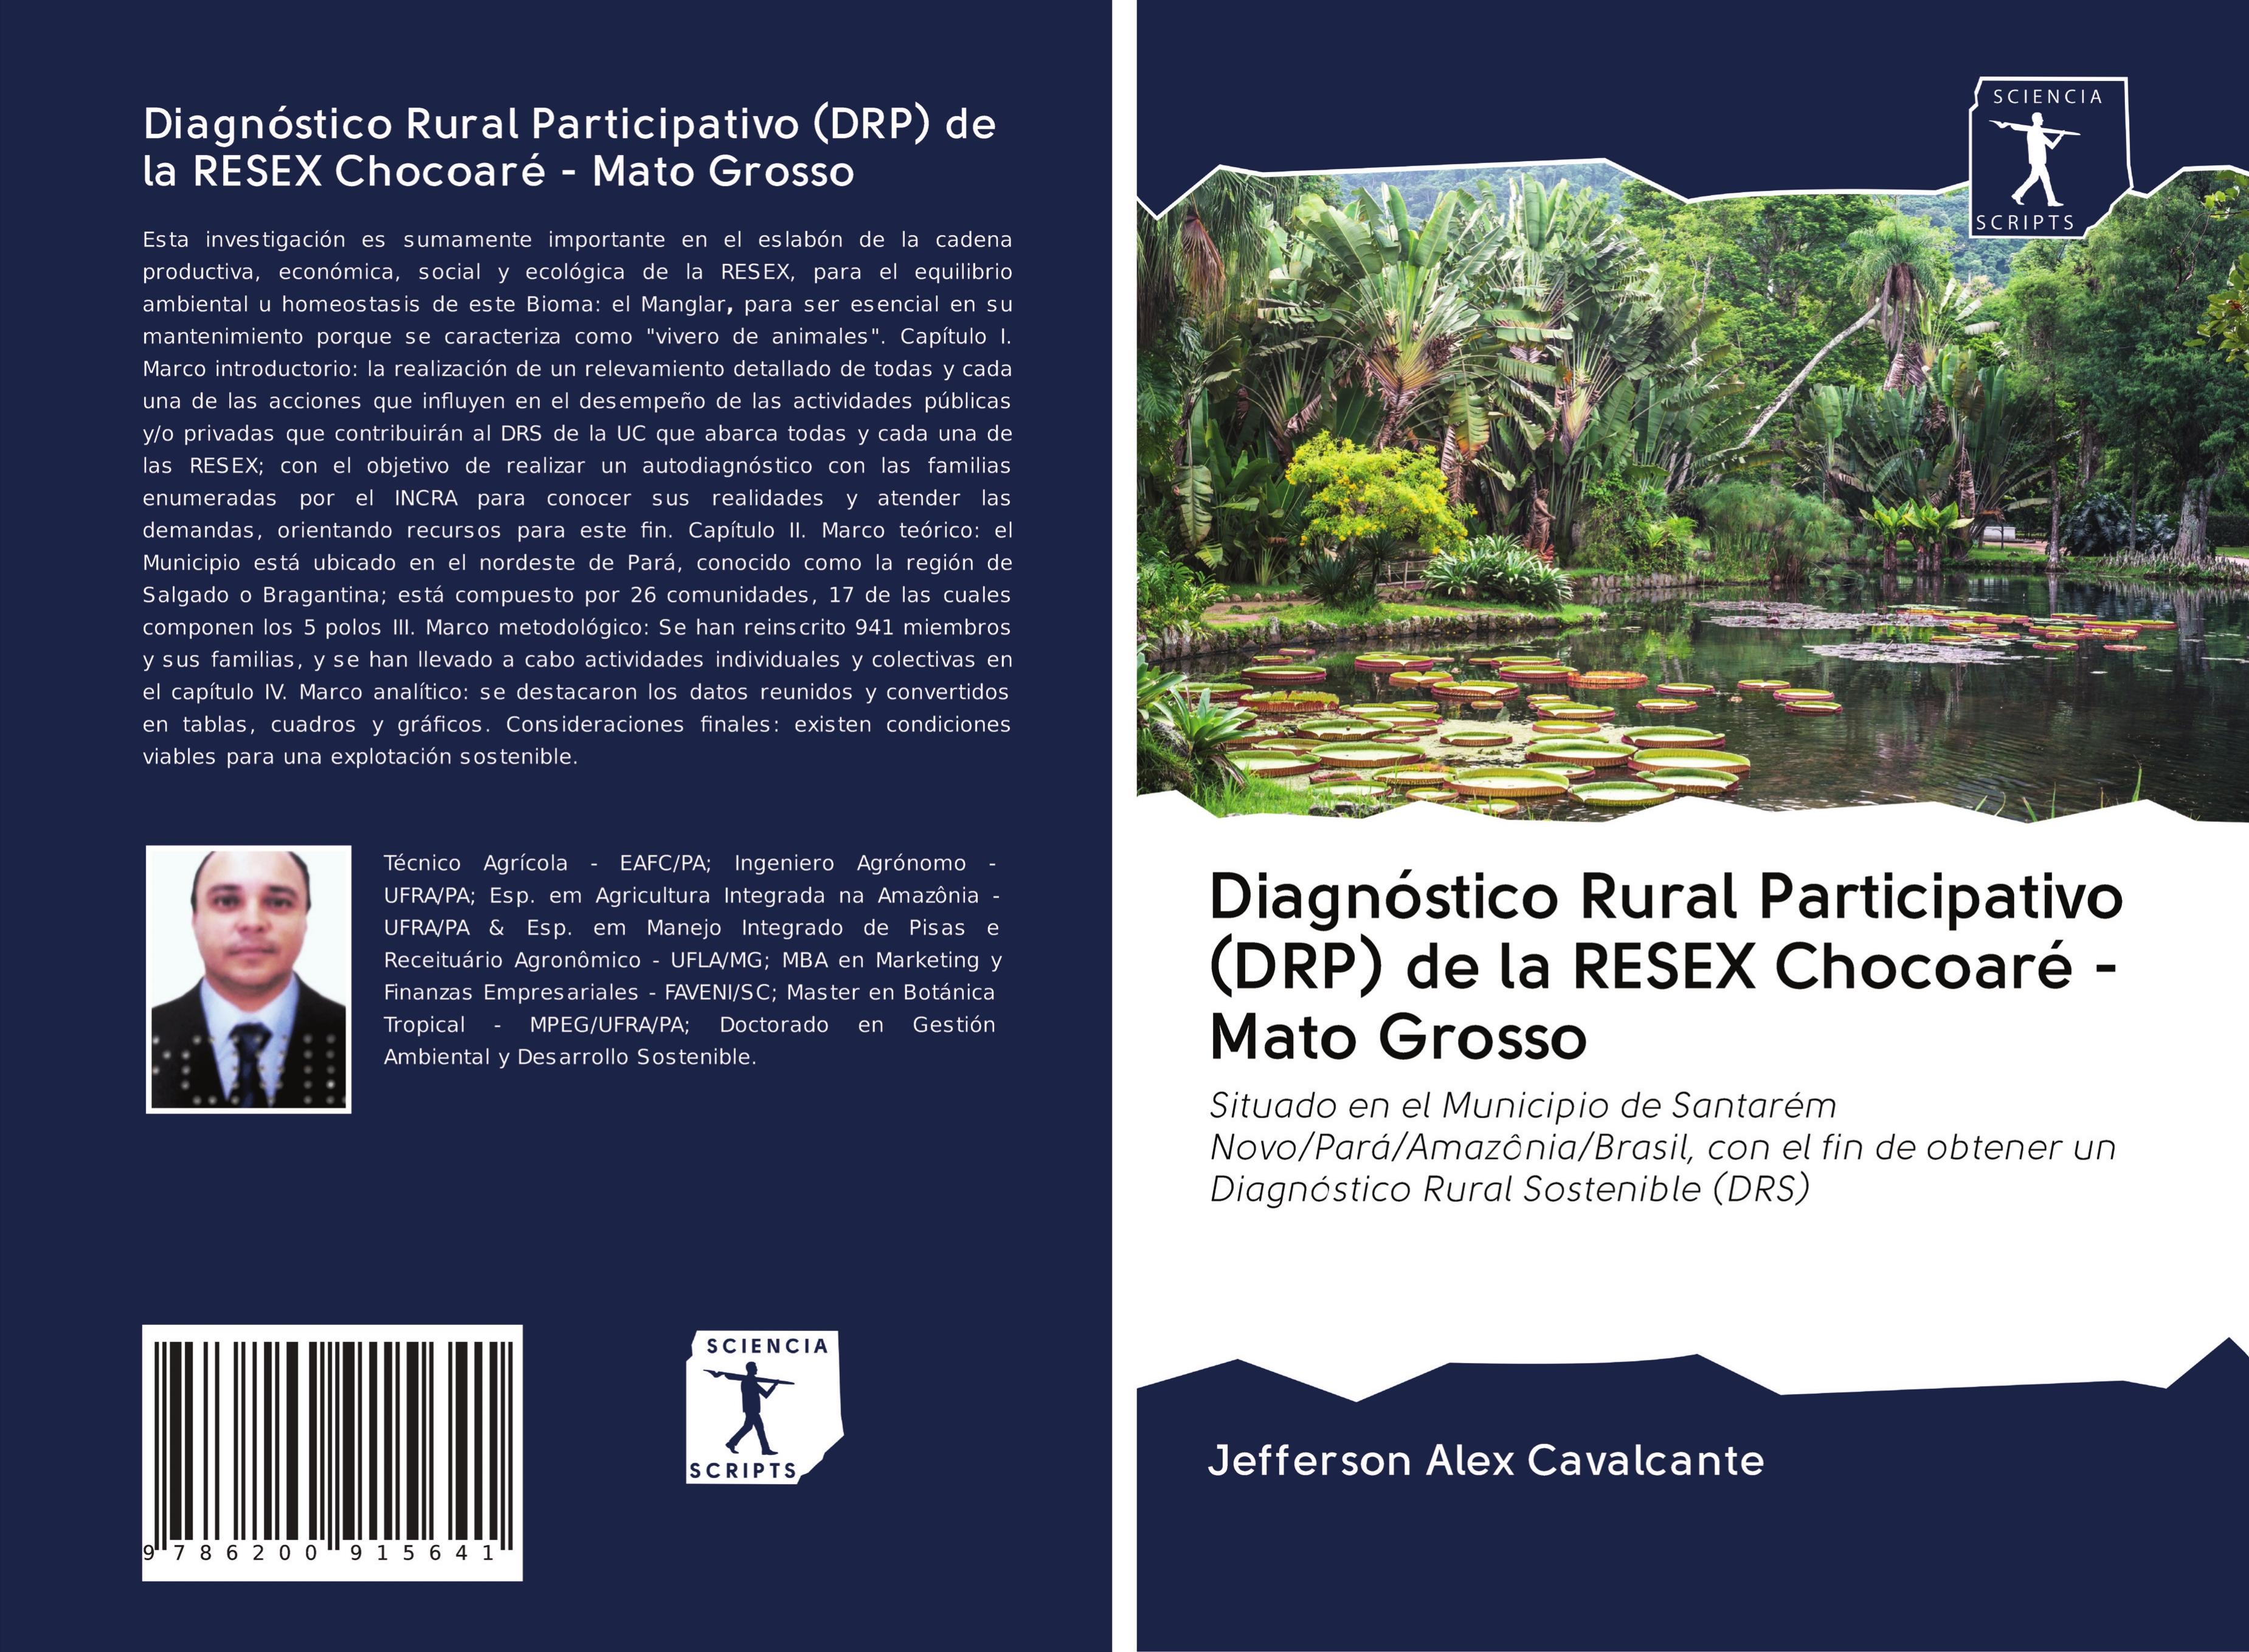 Diagnóstico Rural Participativo (DRP) de la RESEX Chocoaré - Mato Grosso - Cavalcante, Jefferson Alex